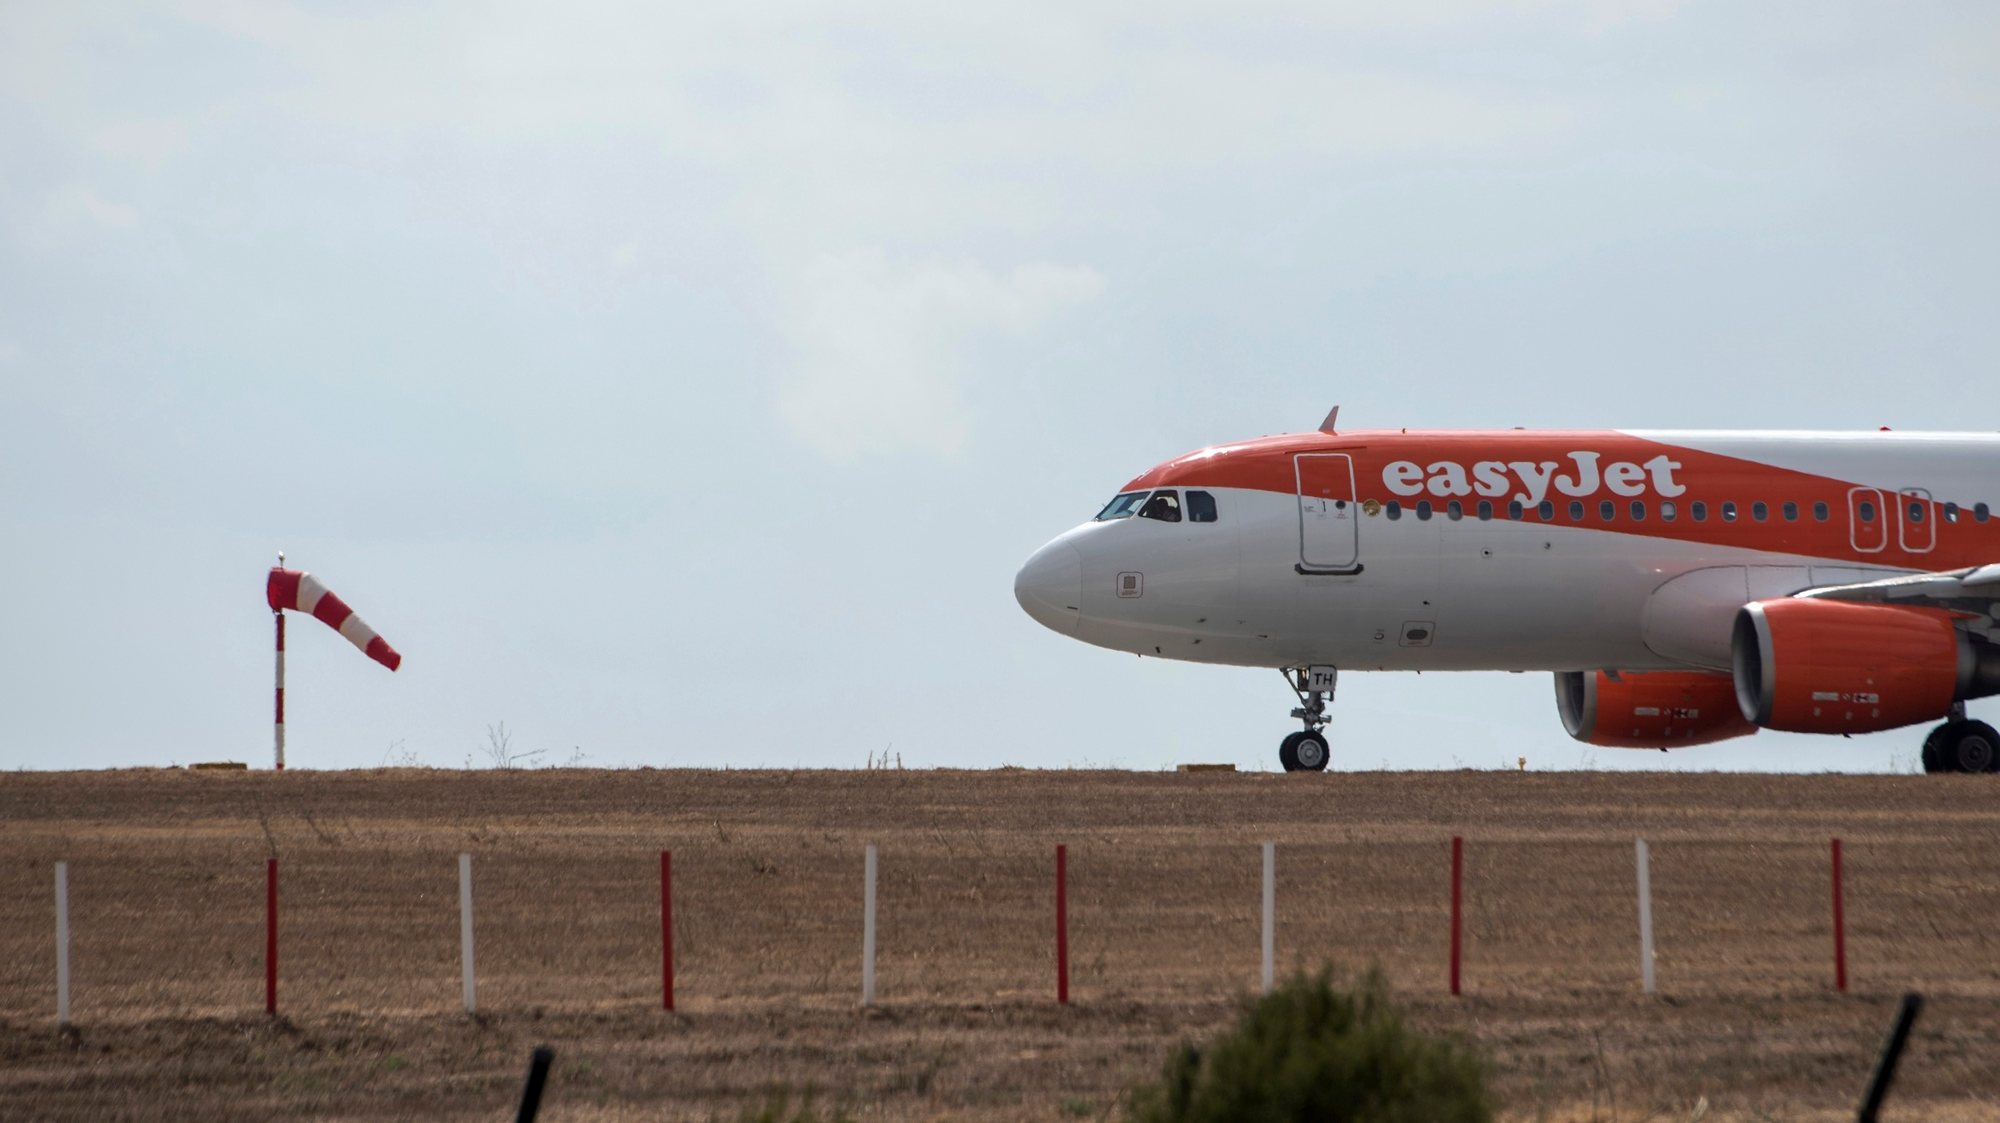 Menorca, Espanha — avião da easyjet aterra nas ilhas baleares